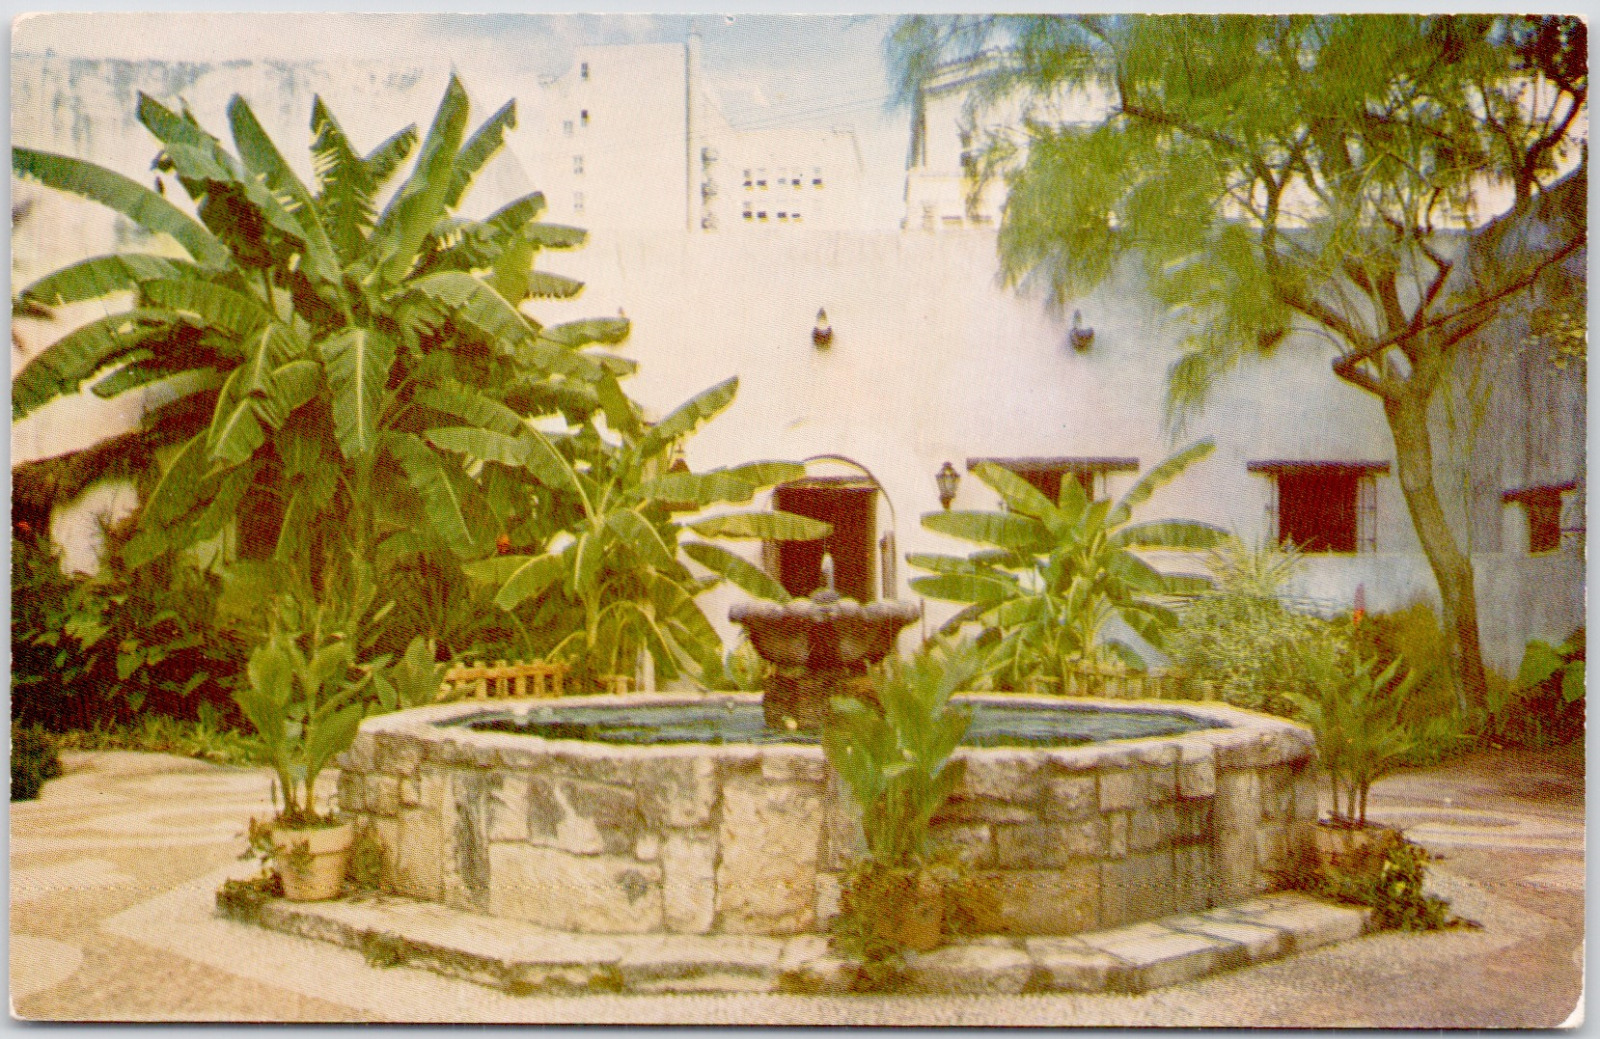 Spanish Governers Palace San Antonio Texas Fountain Patio USA Vintage Postcard